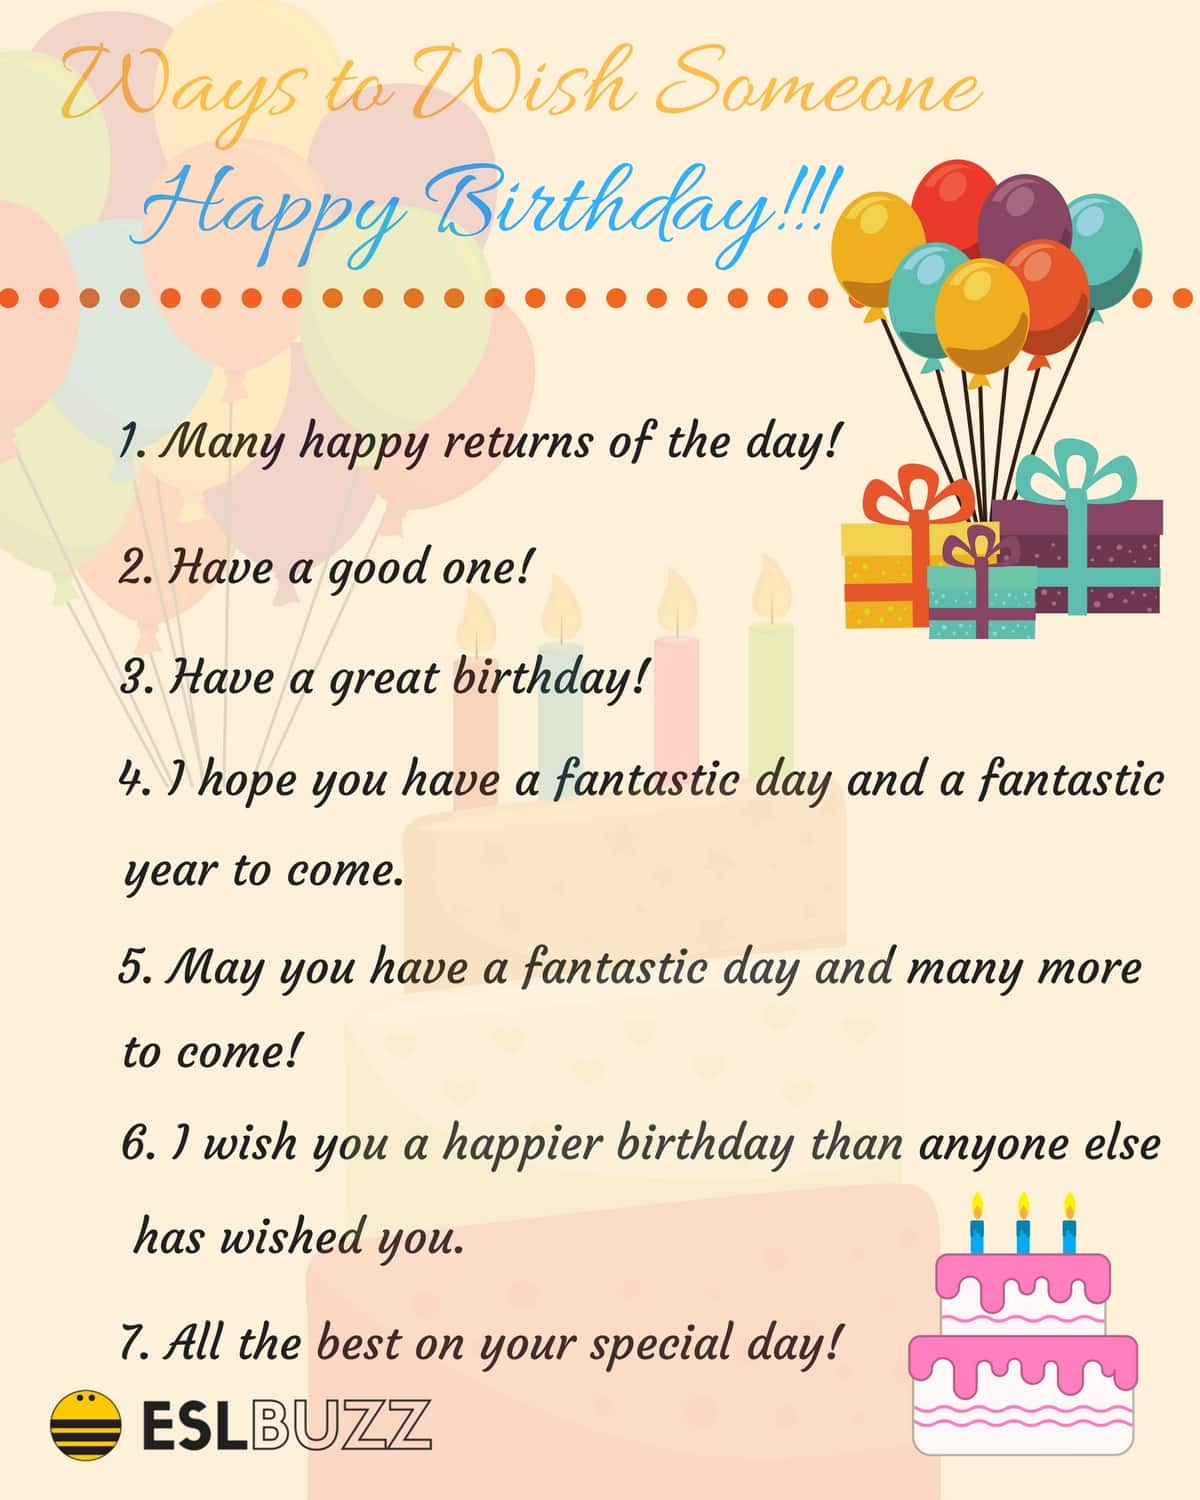 20 Creative Ways to Say " Happy Birthday"